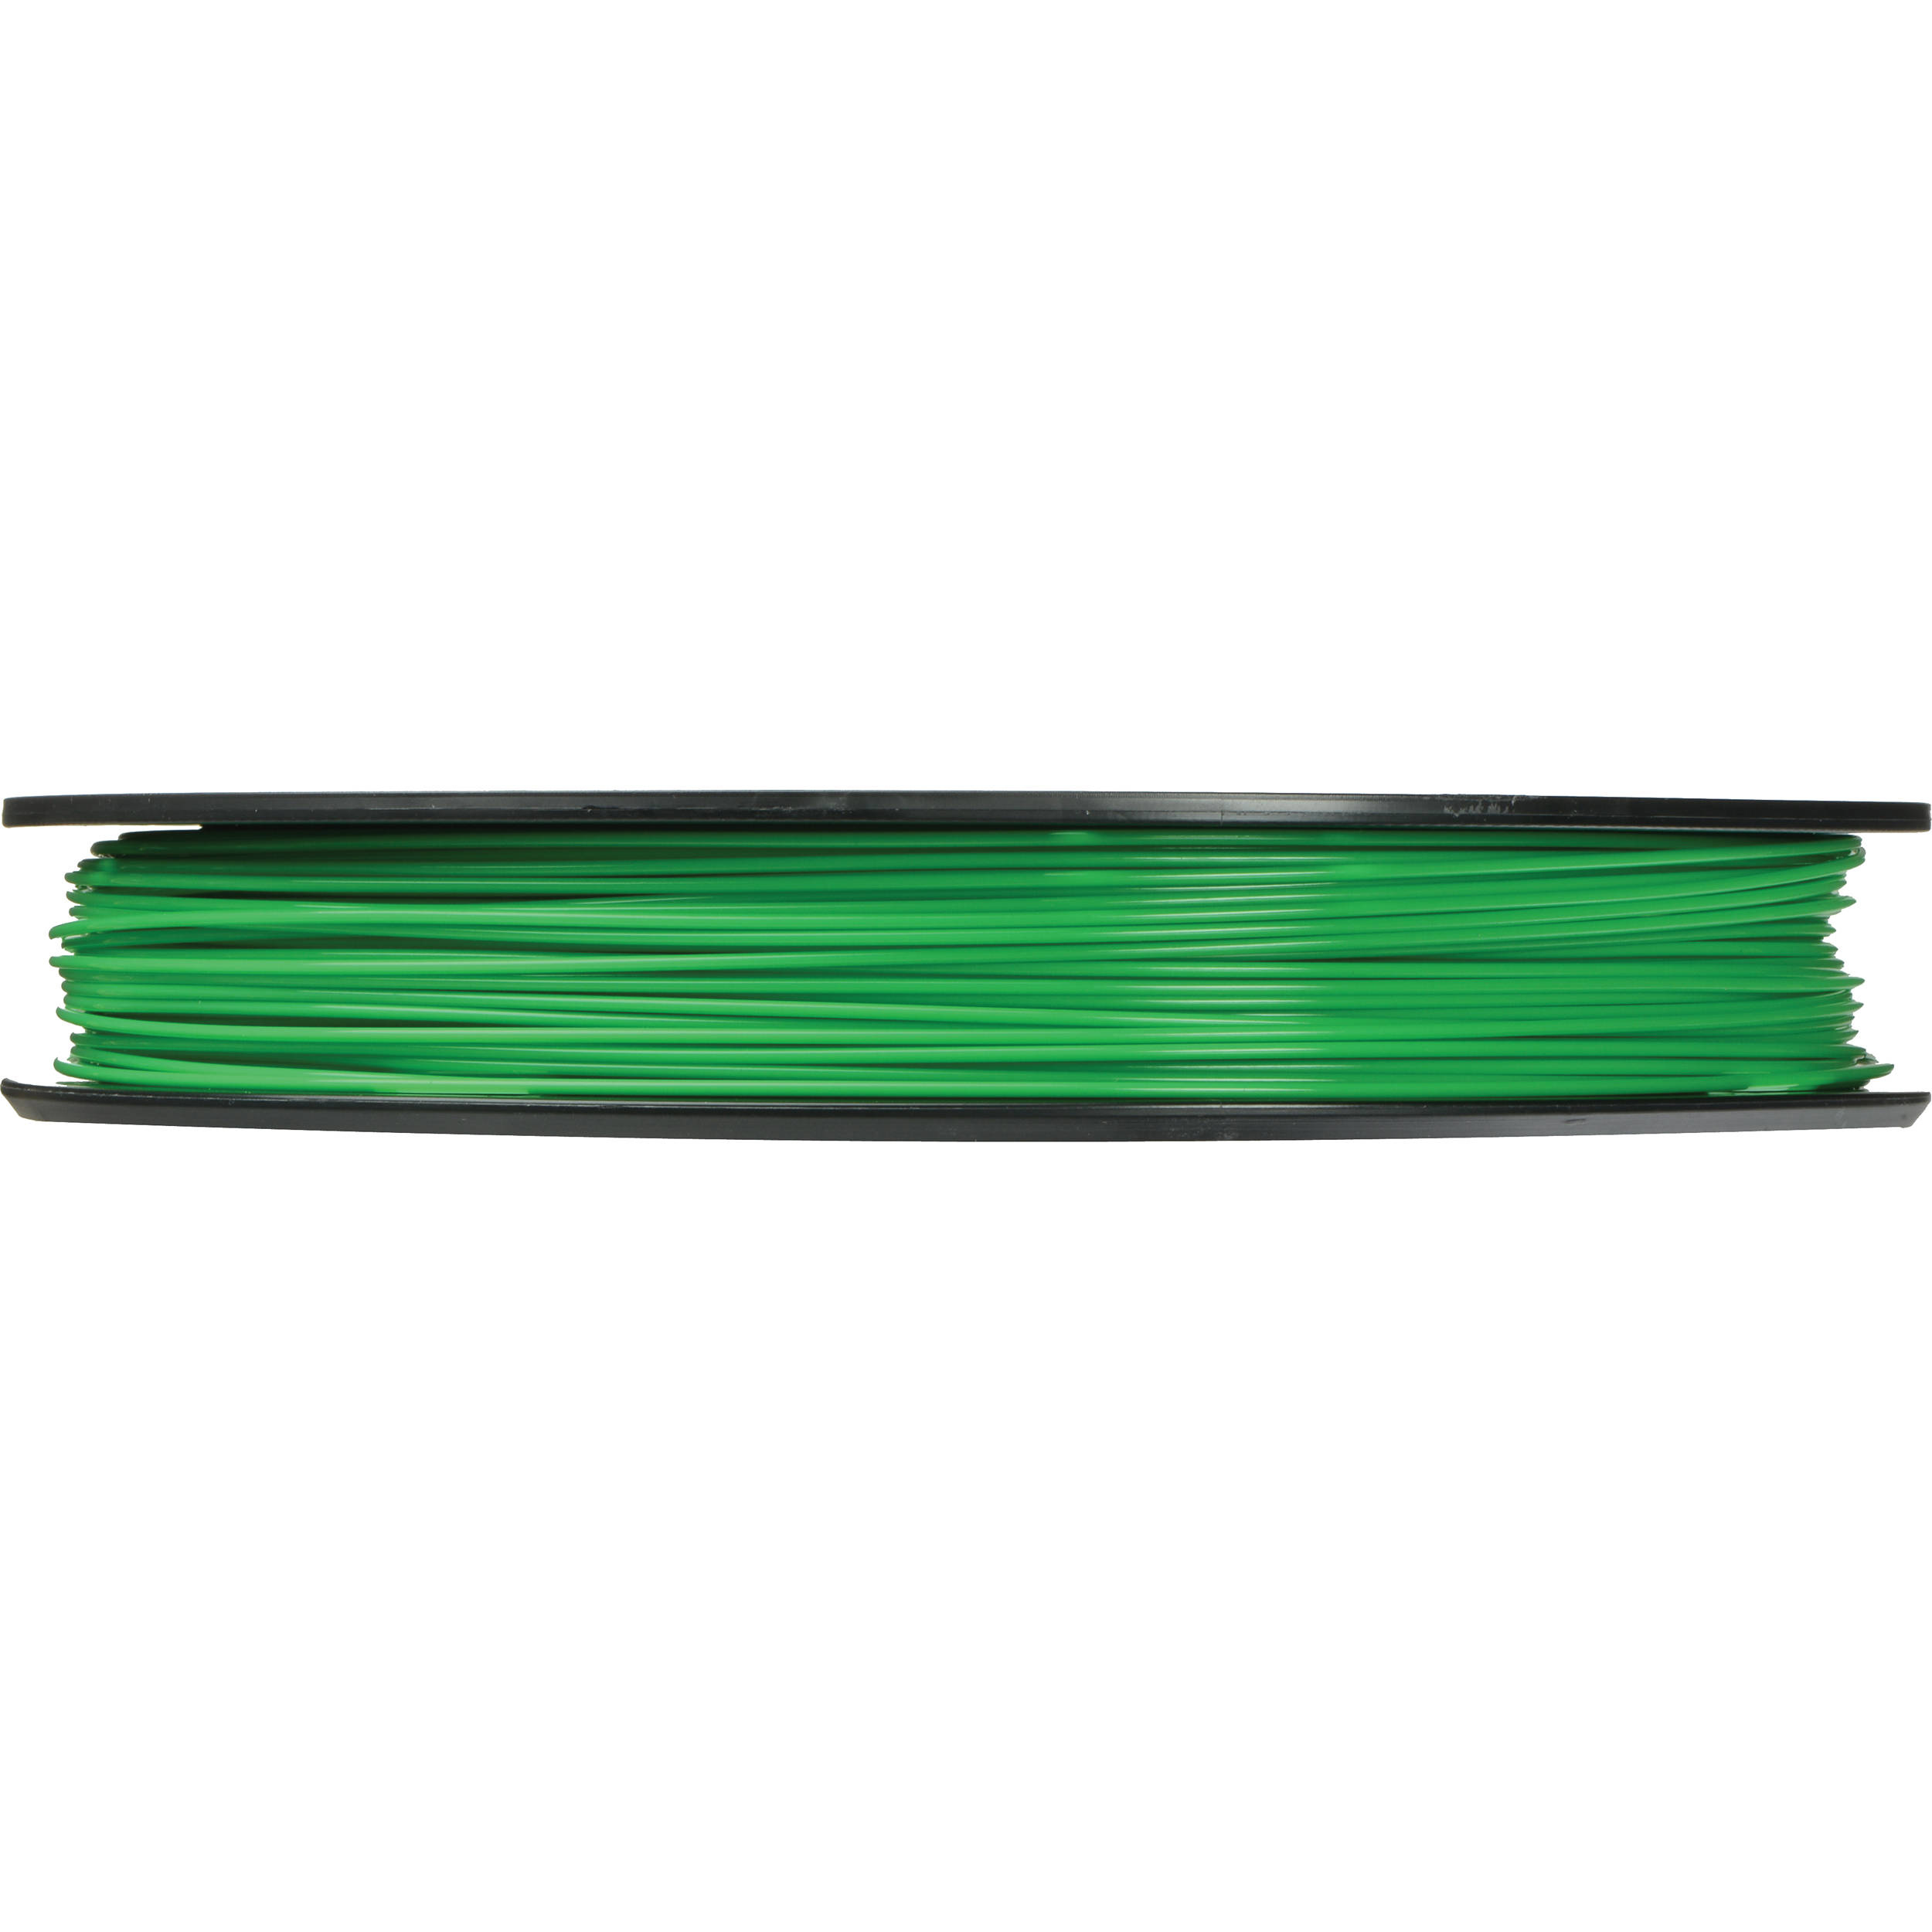 MakerBot 1.75mm PLA Filament (Large Spool, 2 lb, True Green)